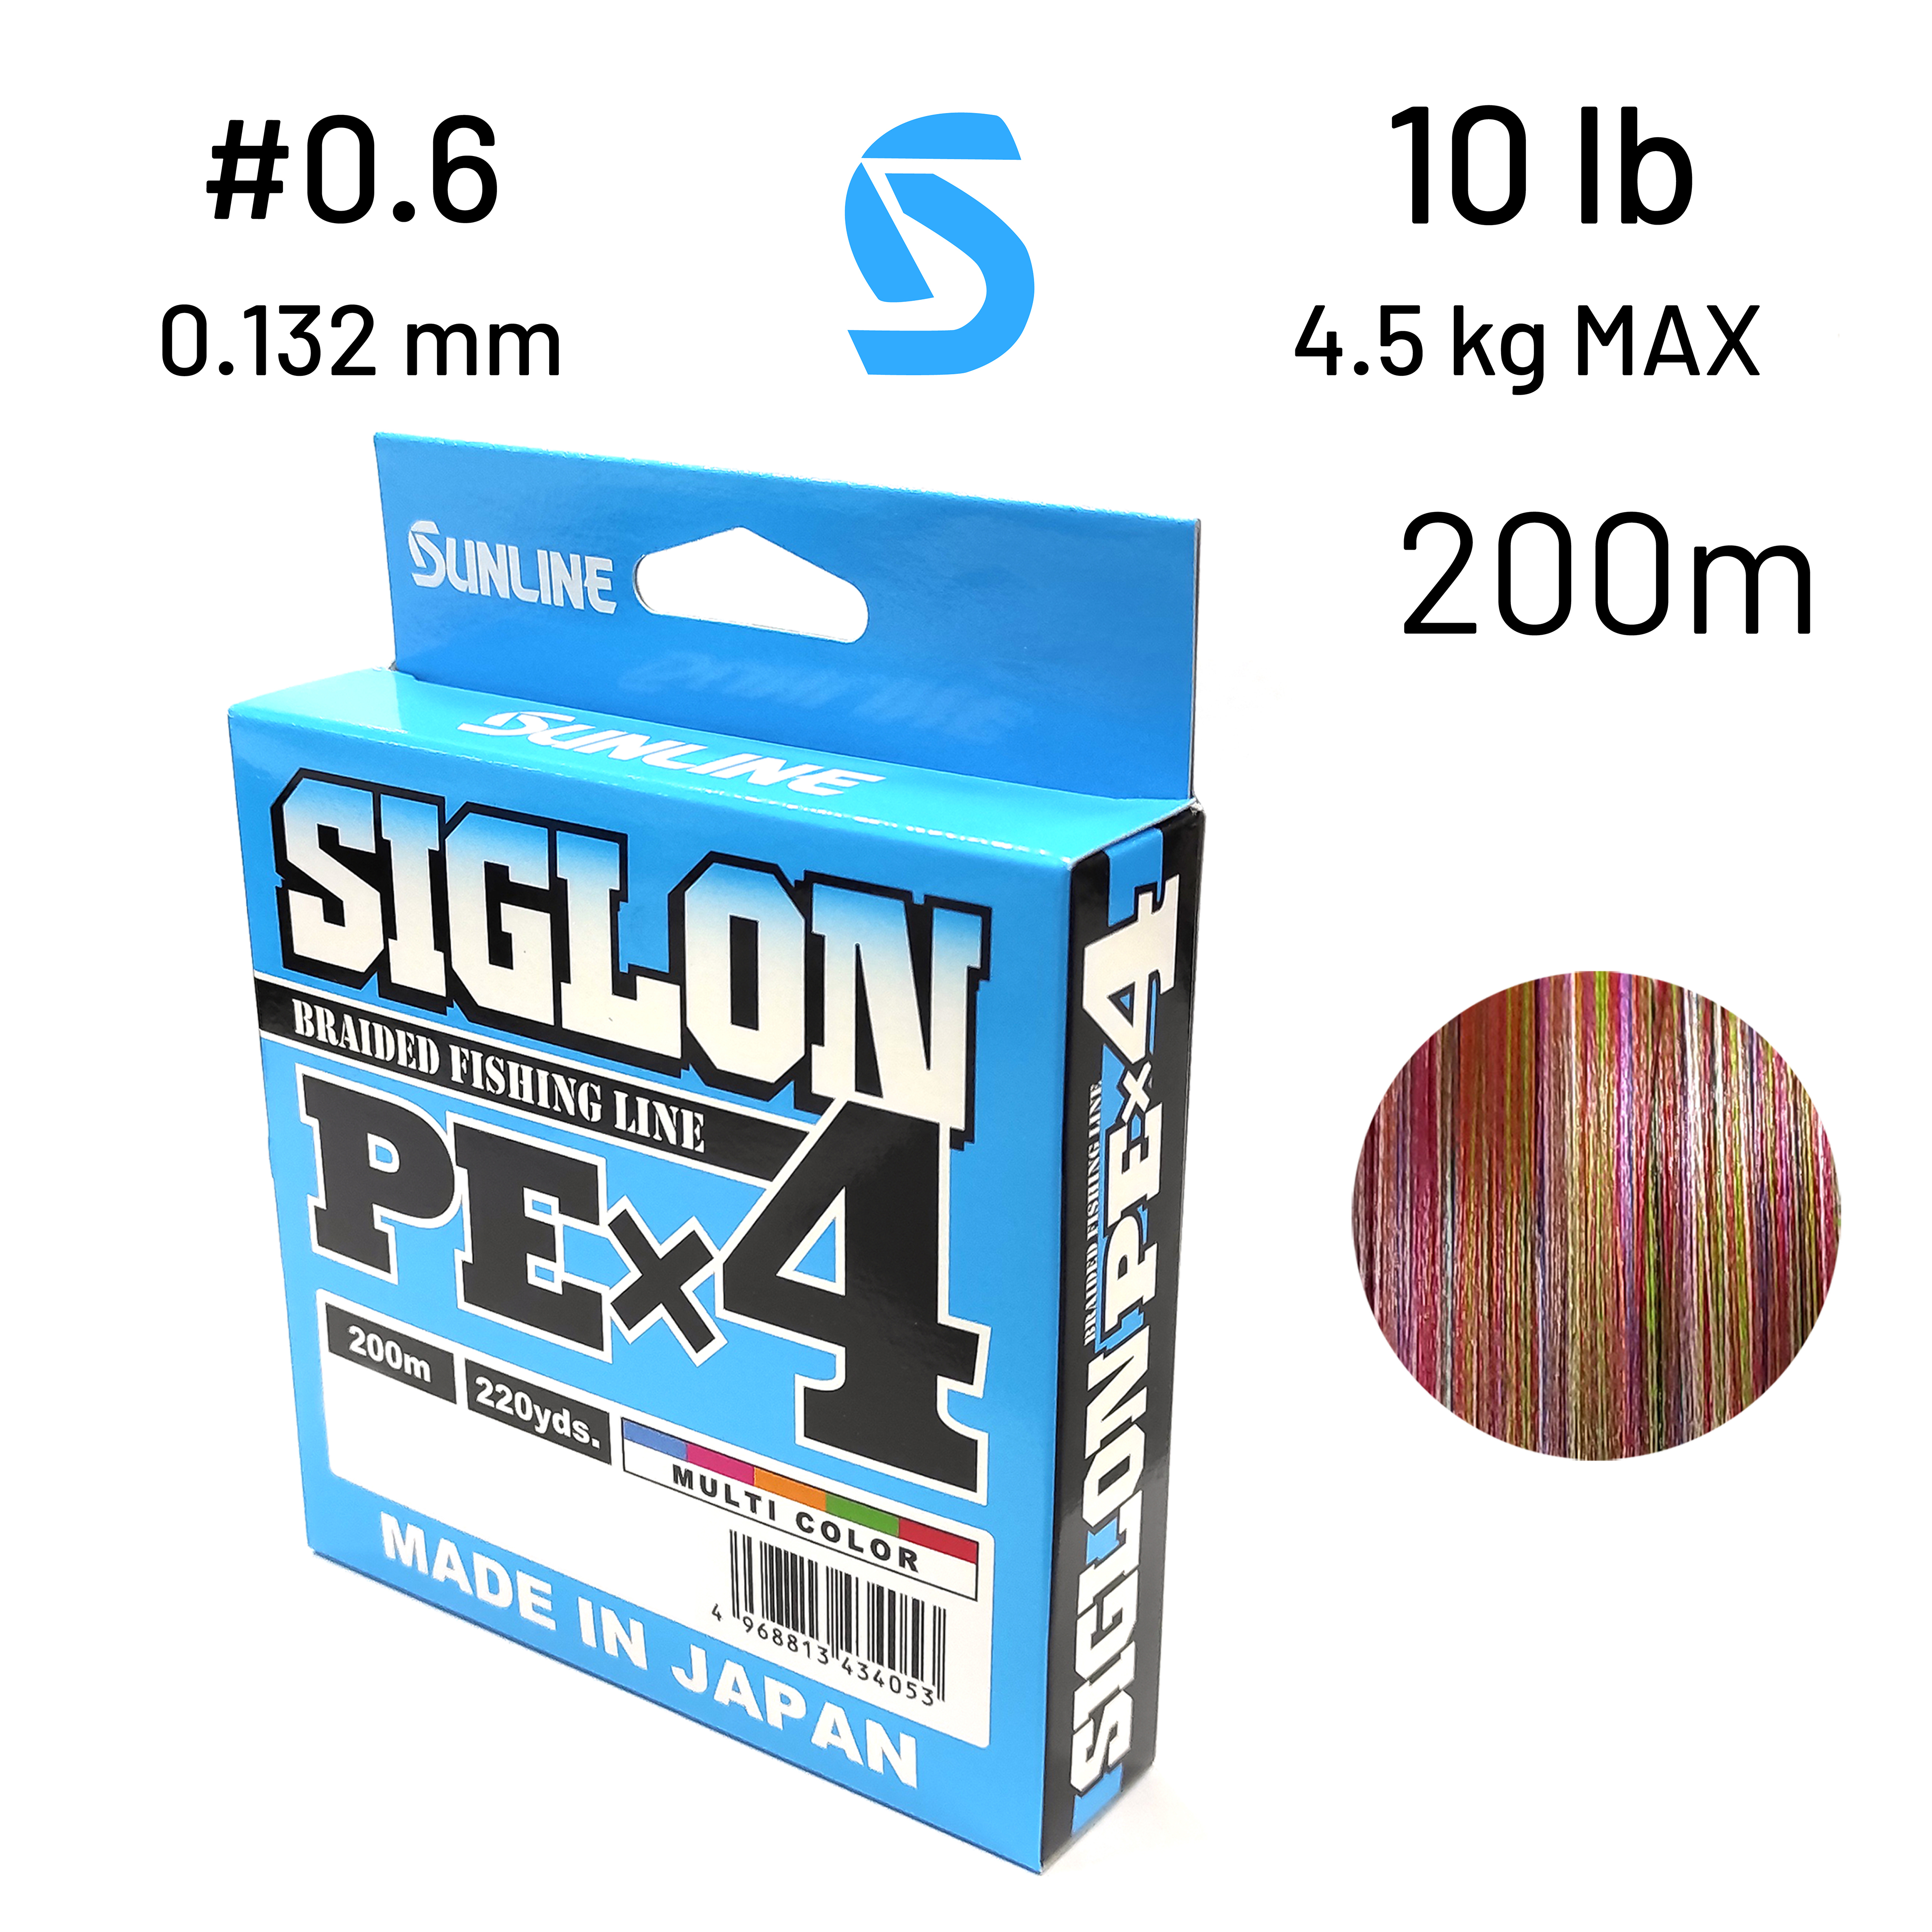 Шнур Sunlline SIGLON PE X4 (Multi color) 200 m #0.6, (10 lb, 4,5kg)